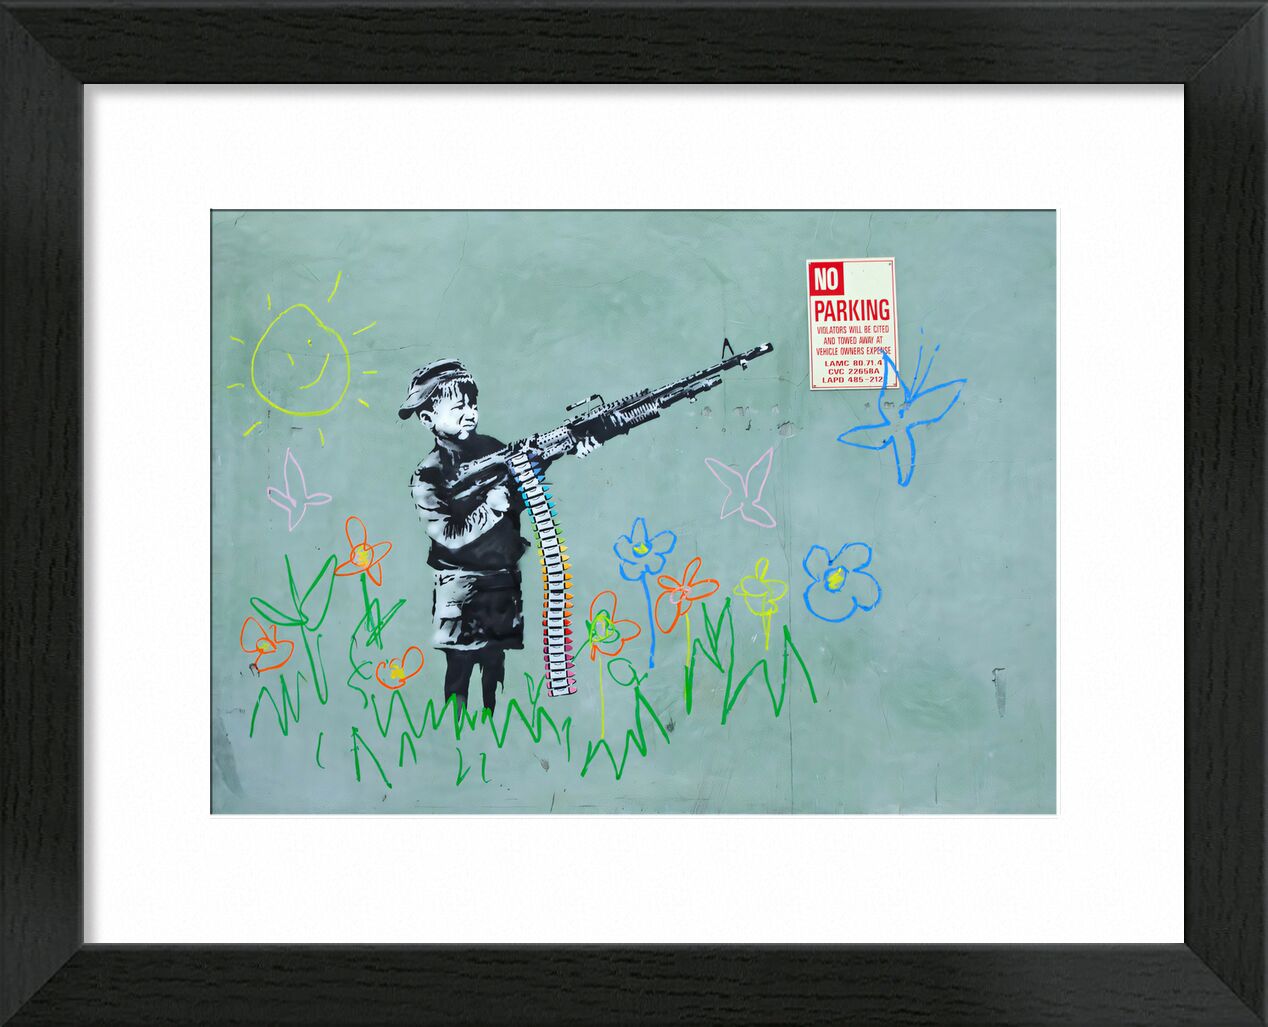 Crayon Boy - Banksy von Bildende Kunst, Prodi Art, banksy, Krieg, Junge, bewaffnet, Frieden, Gewalt, Pistole